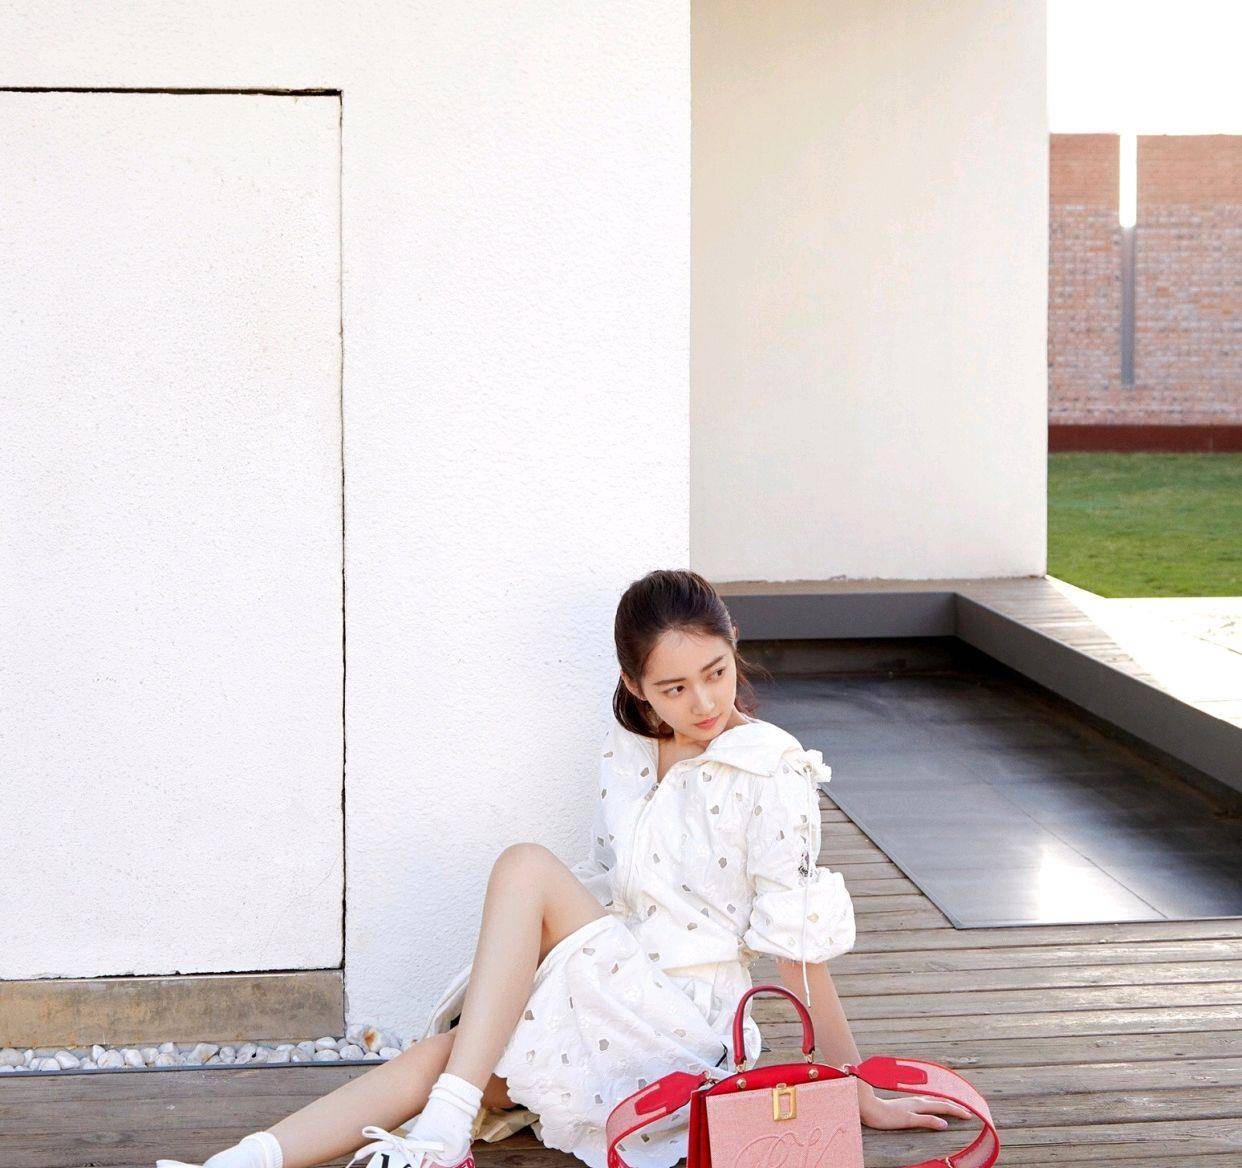 28岁的陈钰琪穿搭很高级,穿白色镂空连衣裙配平底鞋,清纯又时髦